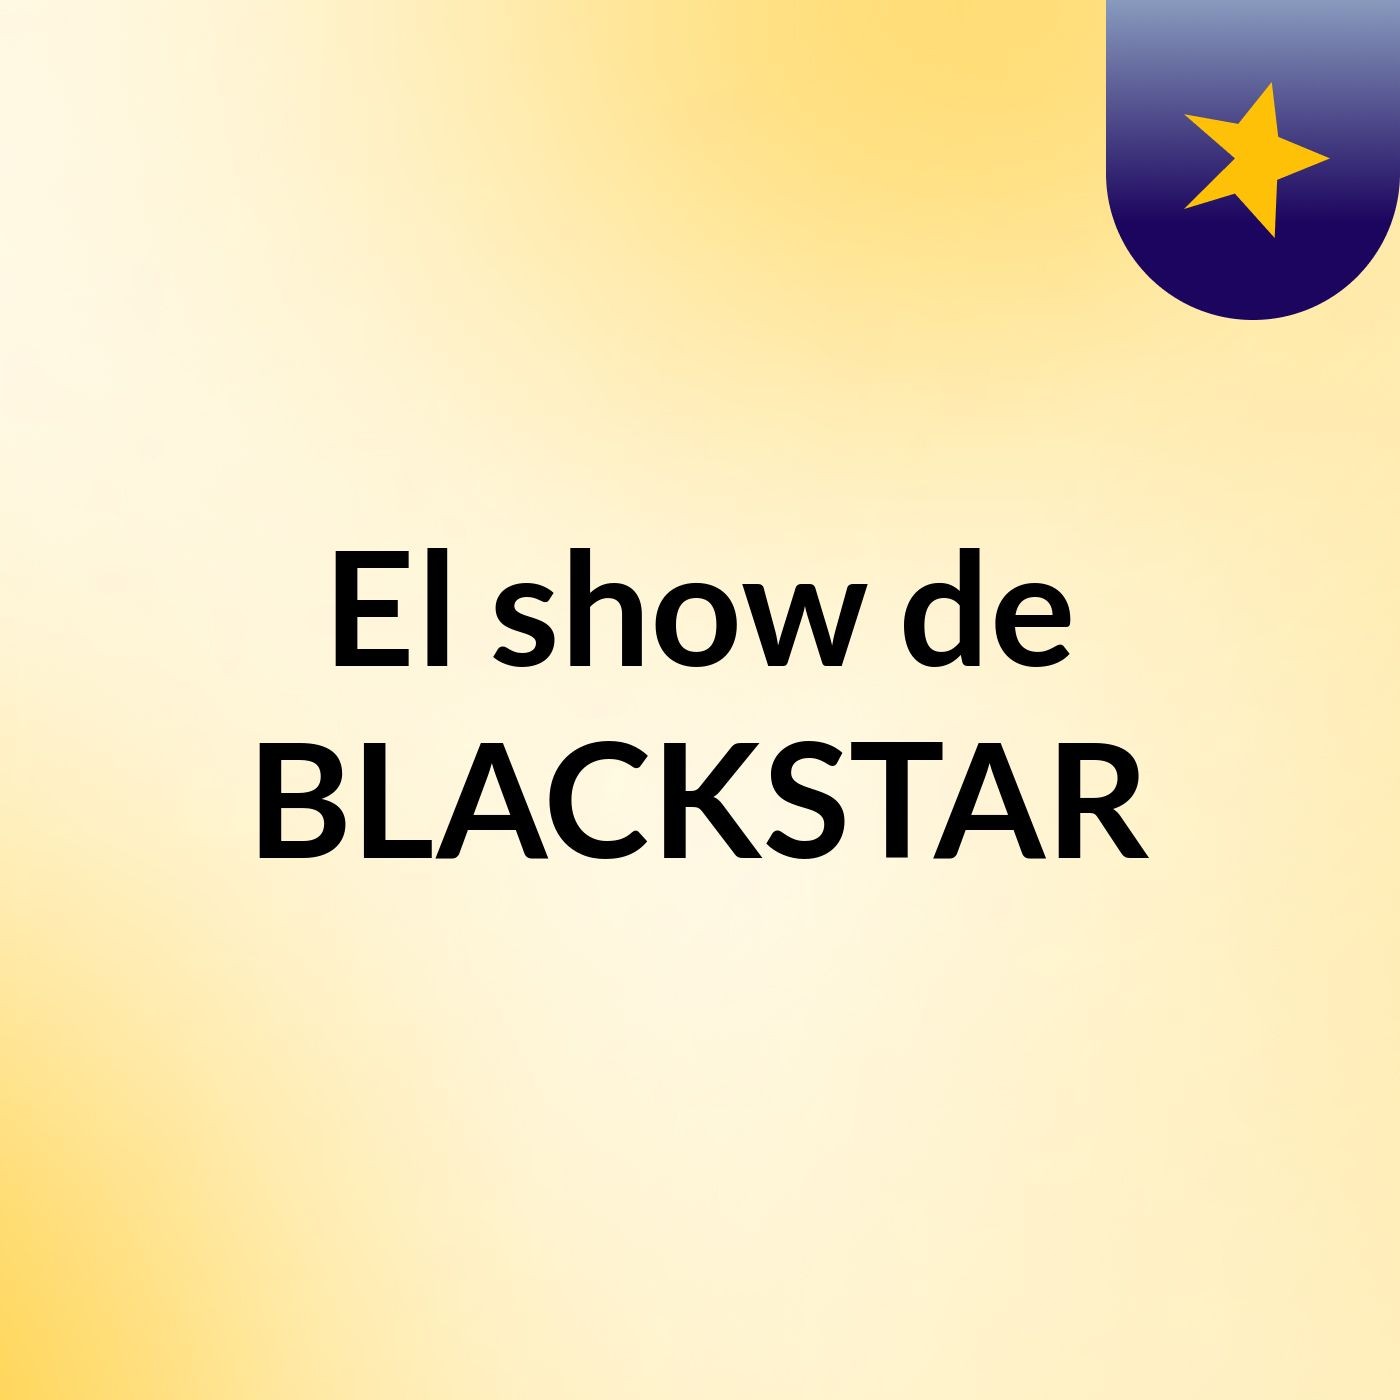 Episodio 3 - El show de BLACKSTAR